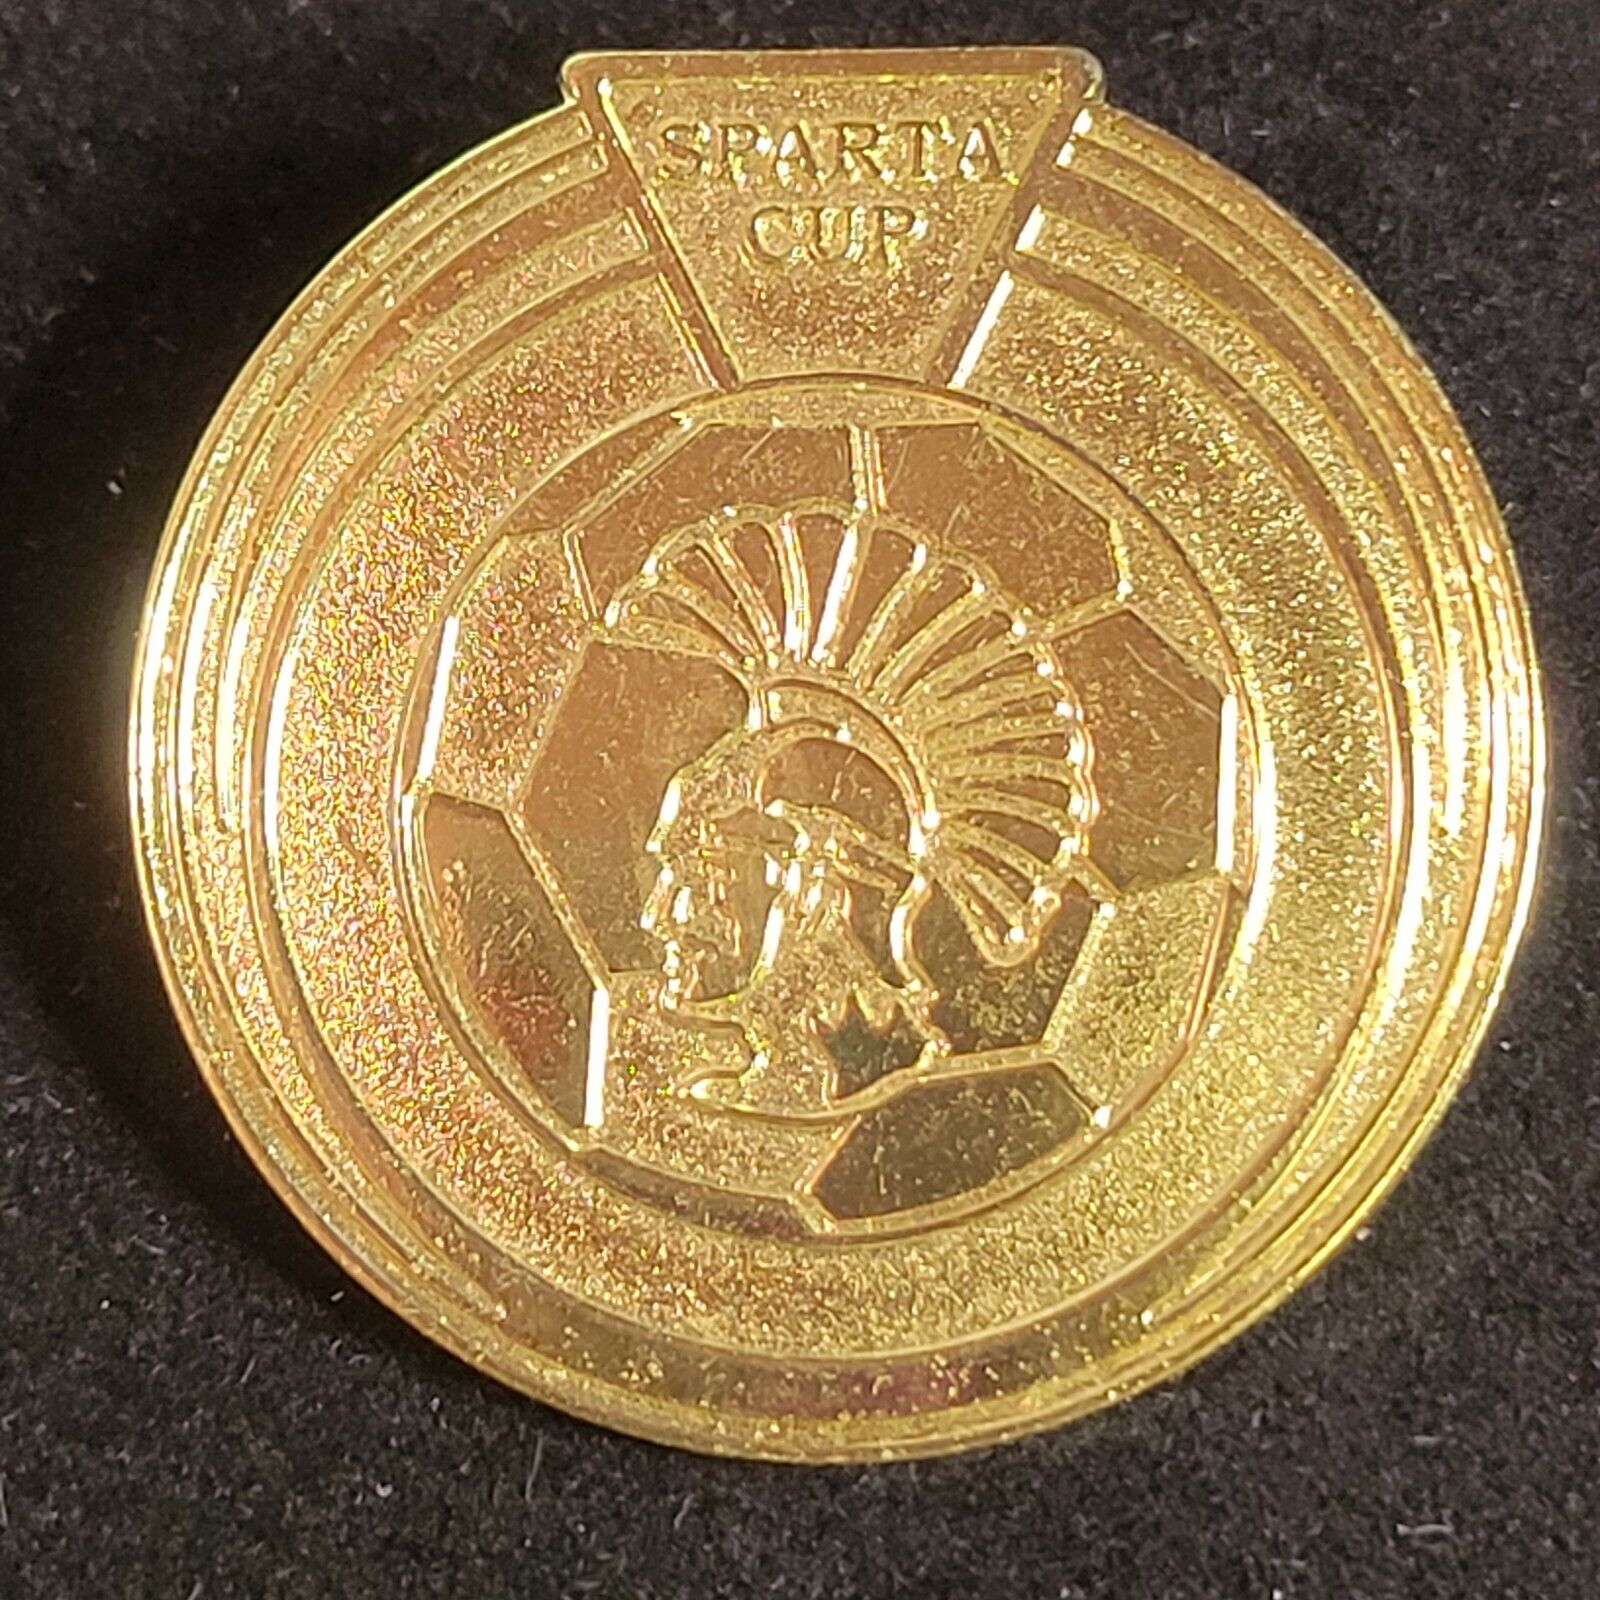 Sparta Cup Soccer Club Large Gold Tone Souvenir Lapel Badge Vest Pin